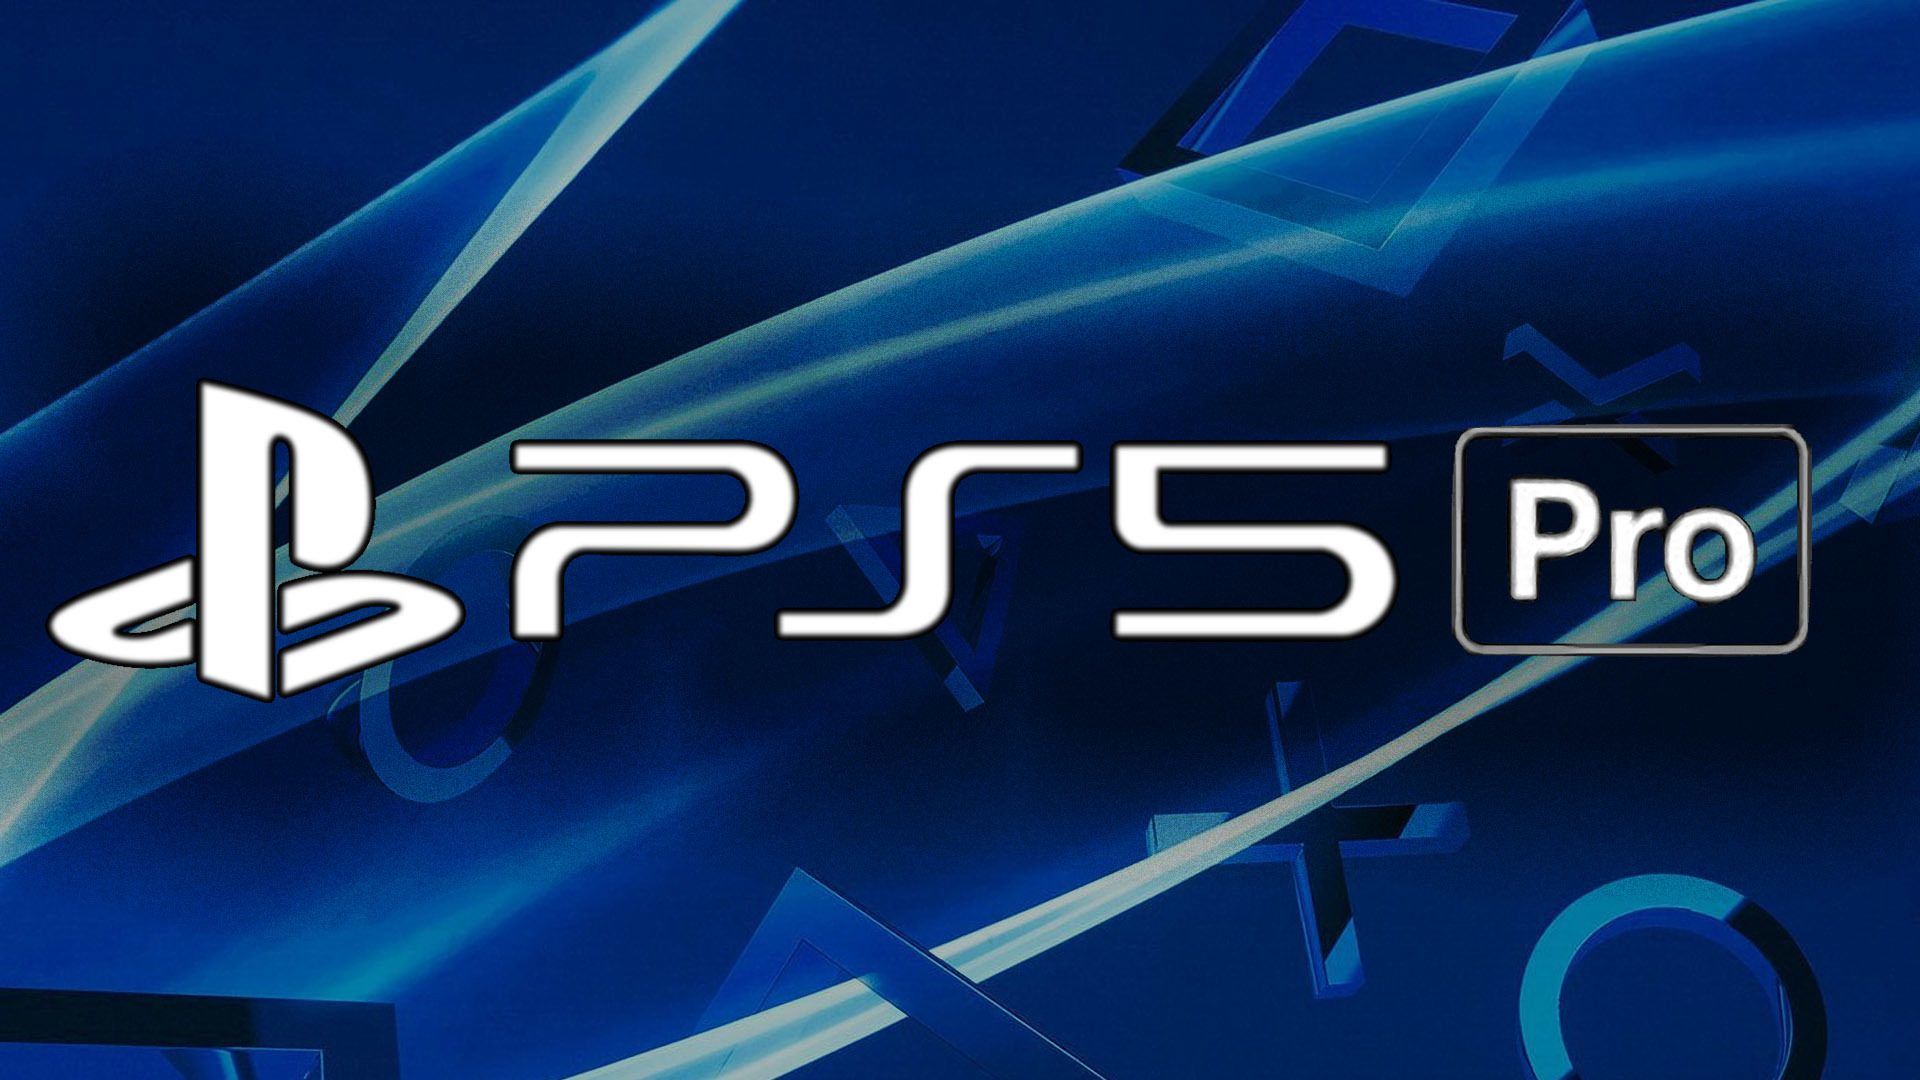 Обновление ps3 4.91. Тема ps5. PLAYSTATION 5 Pro. Game Wave консоль. Ps5 Pro logo.